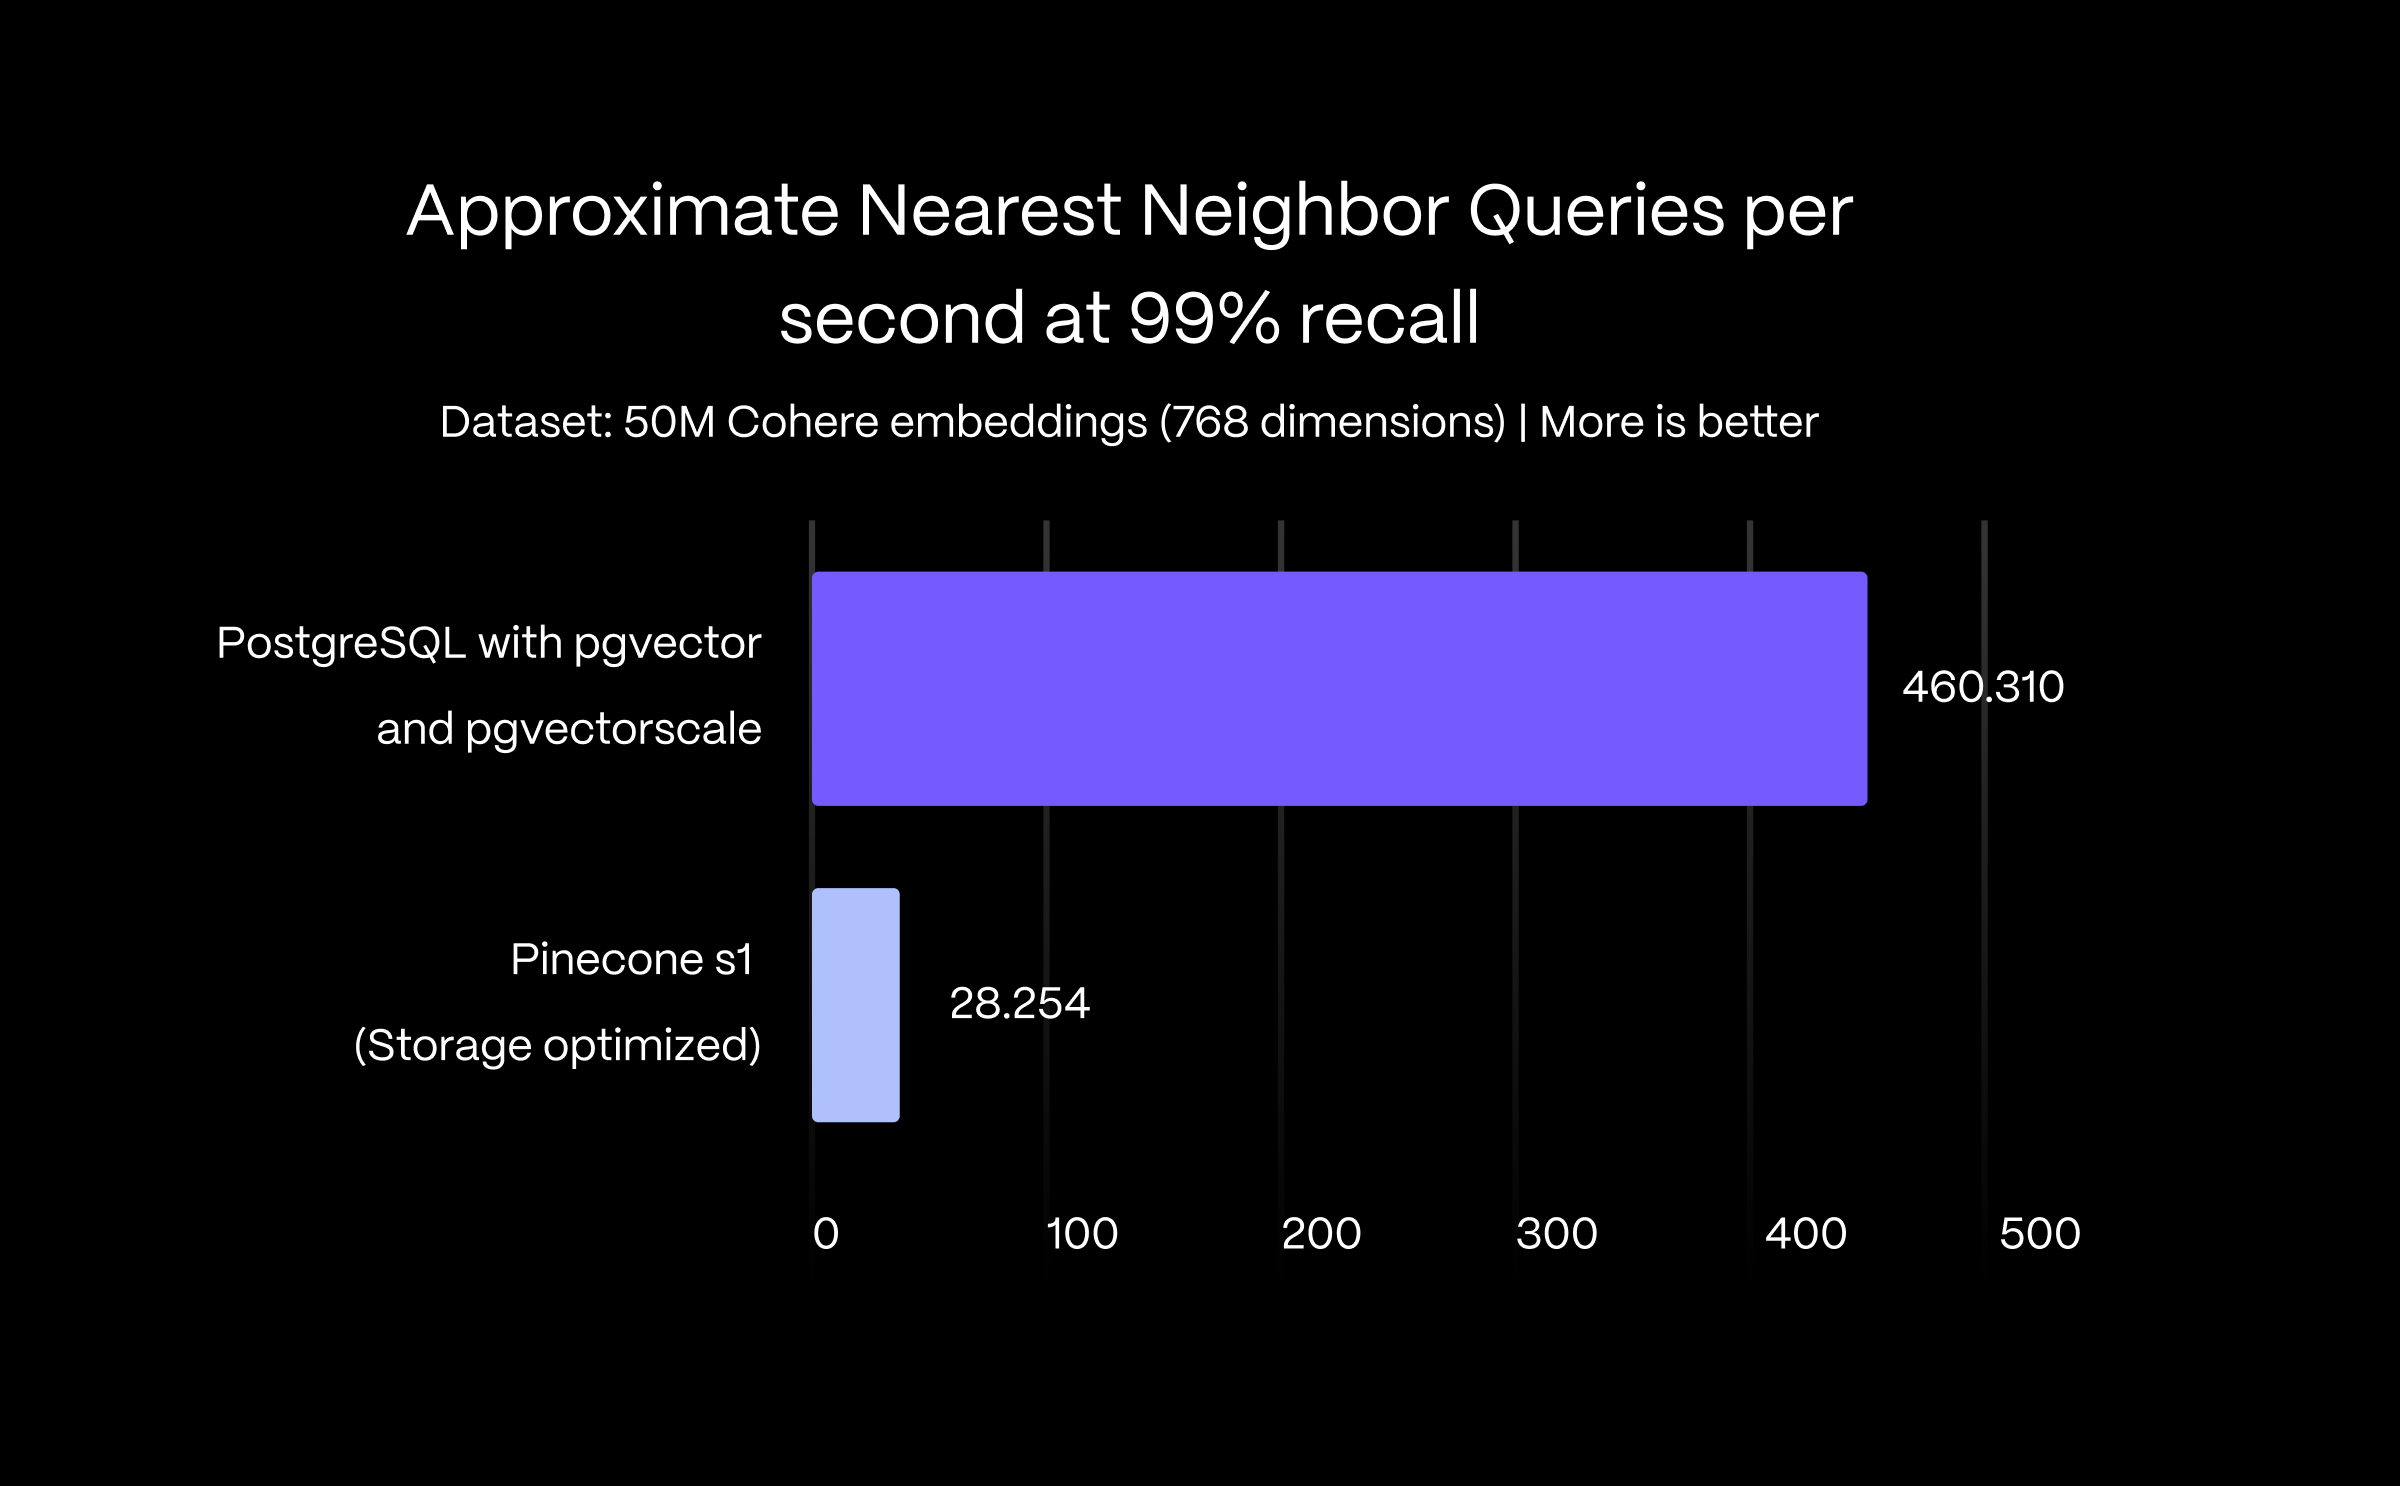 条形图显示使用 pgvector 和 pgvectorscale 的 PostgreSQL 在 99% recall 时近似最近邻查询的查询吞吐量（每秒查询数）提高了 16 倍。